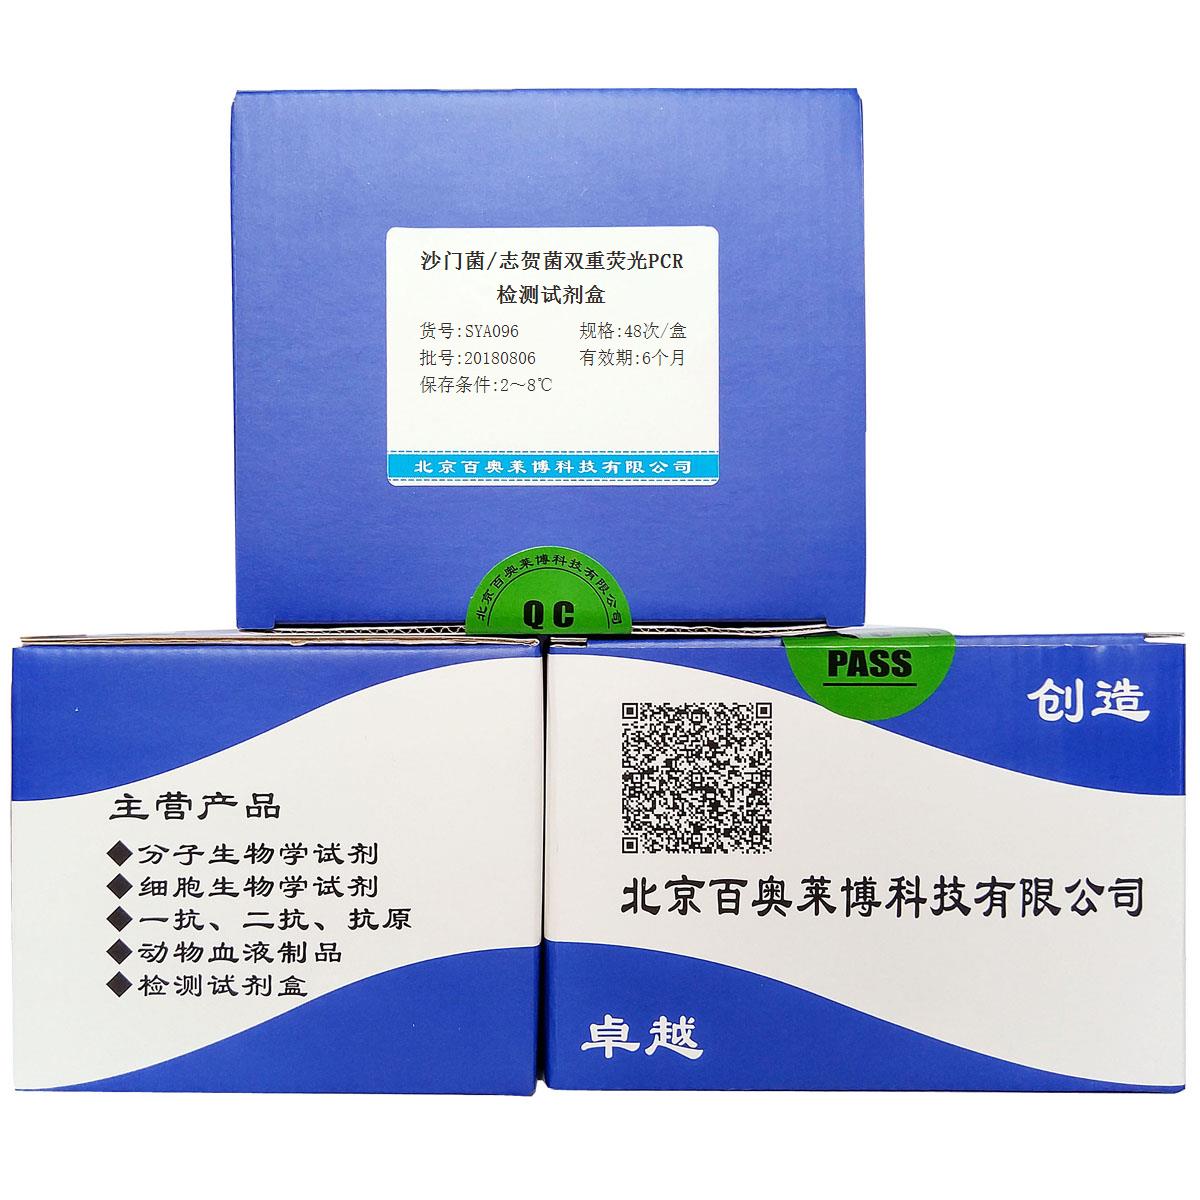 沙门菌/志贺菌双重荧光PCR检测试剂盒